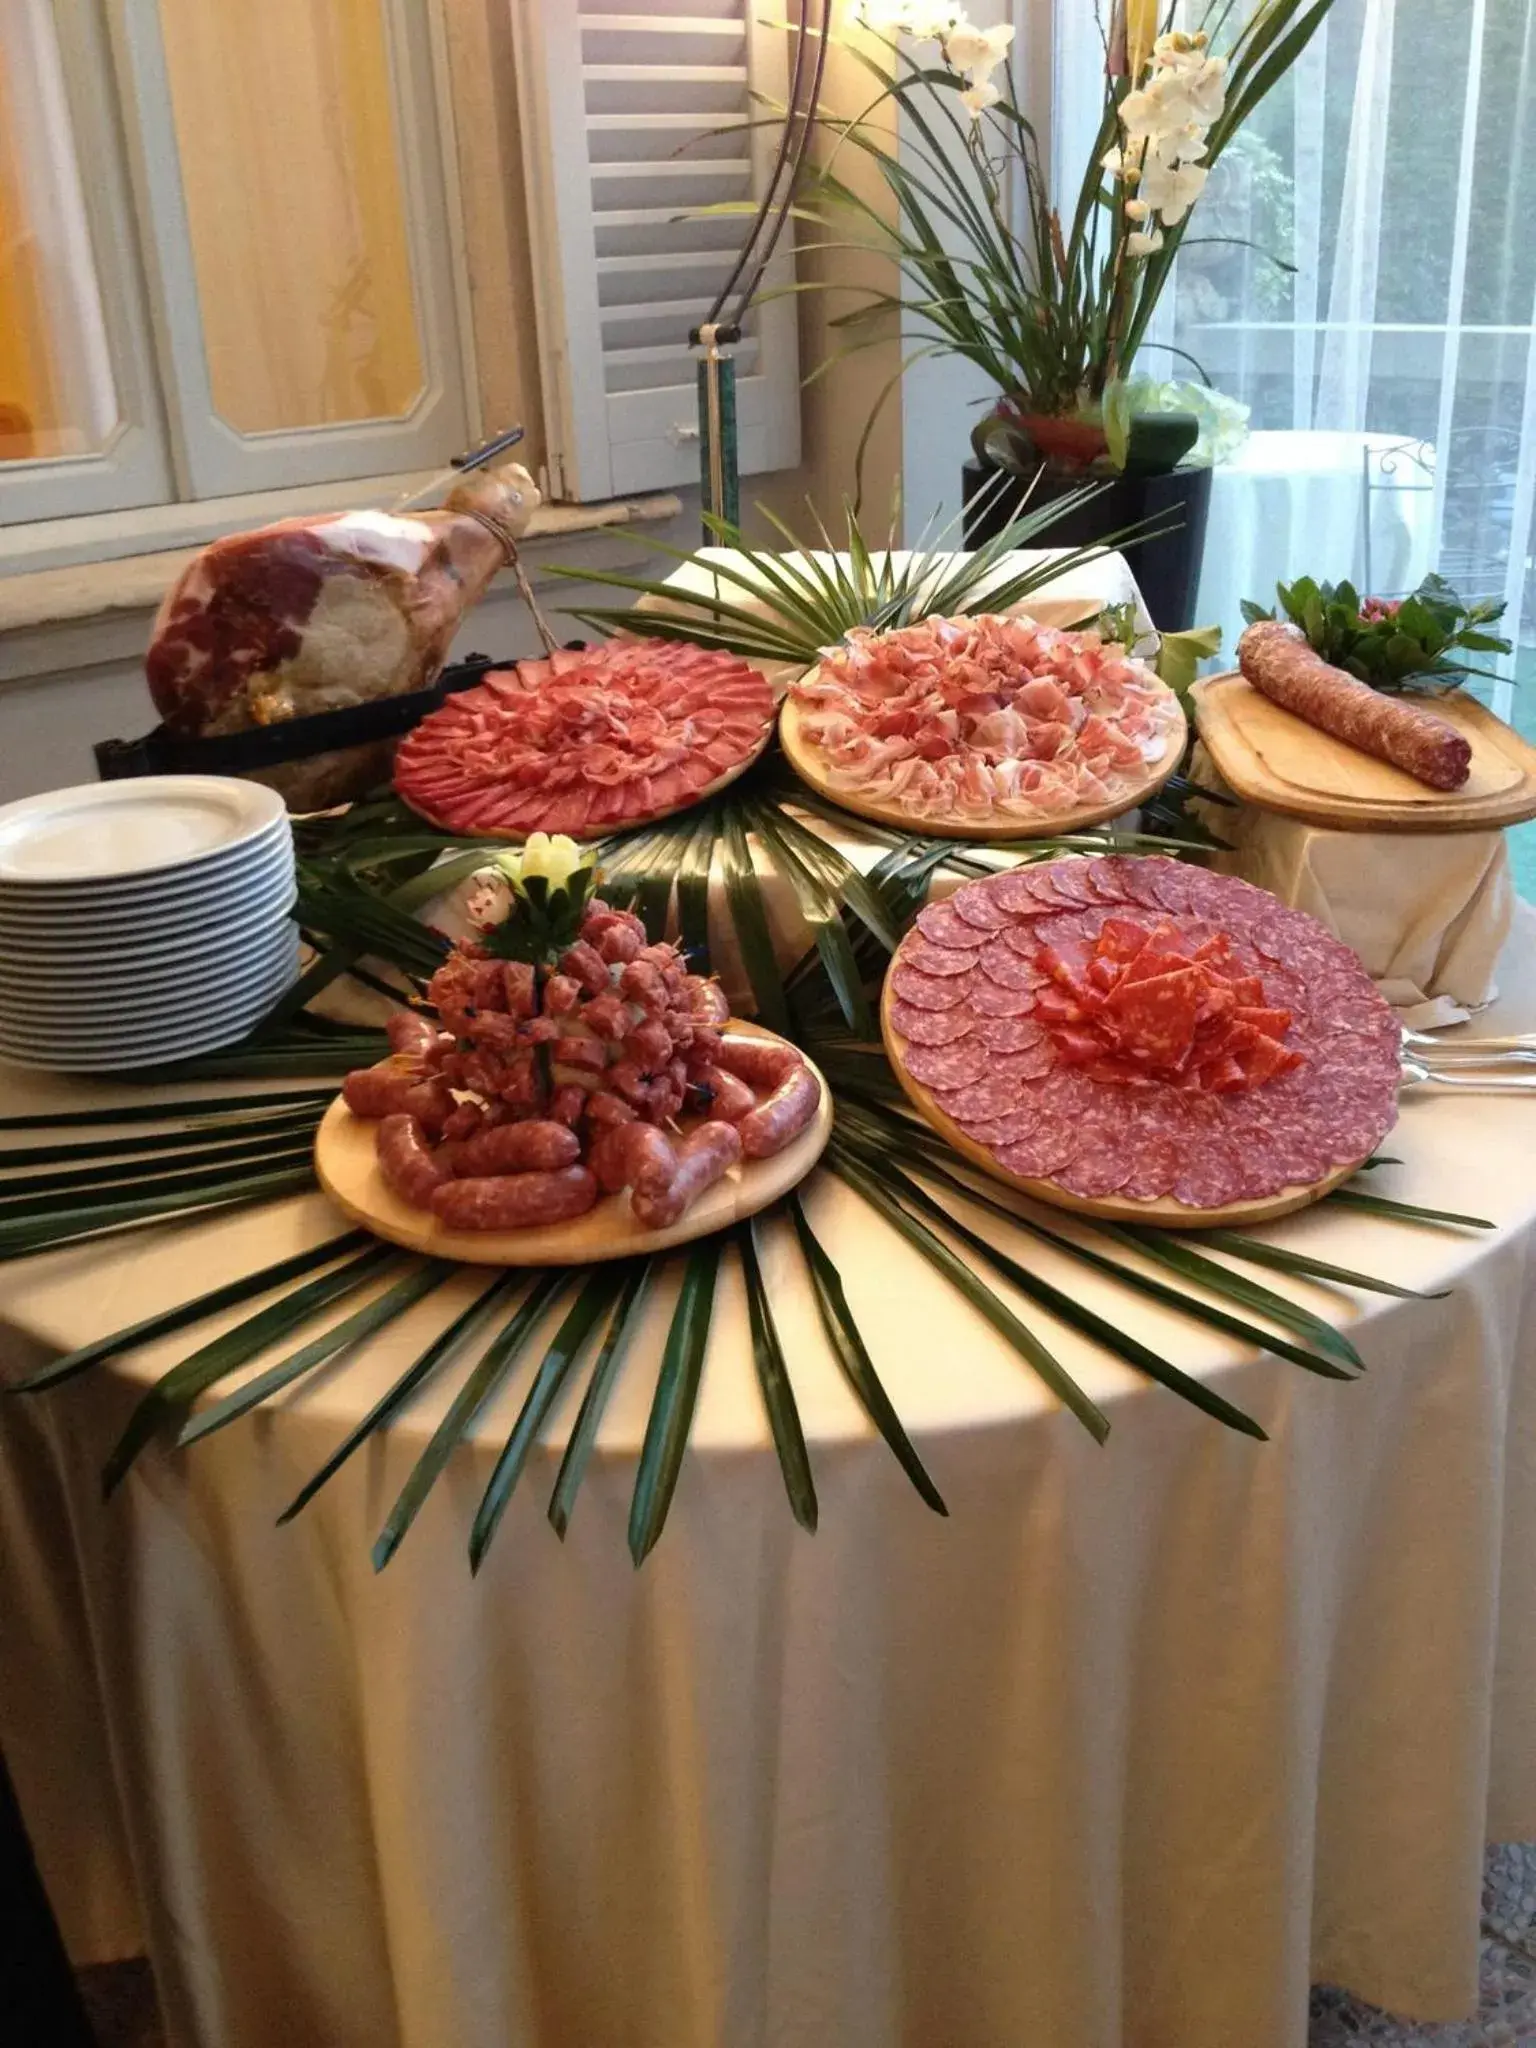 Buffet breakfast in Hotel Villa Giulia